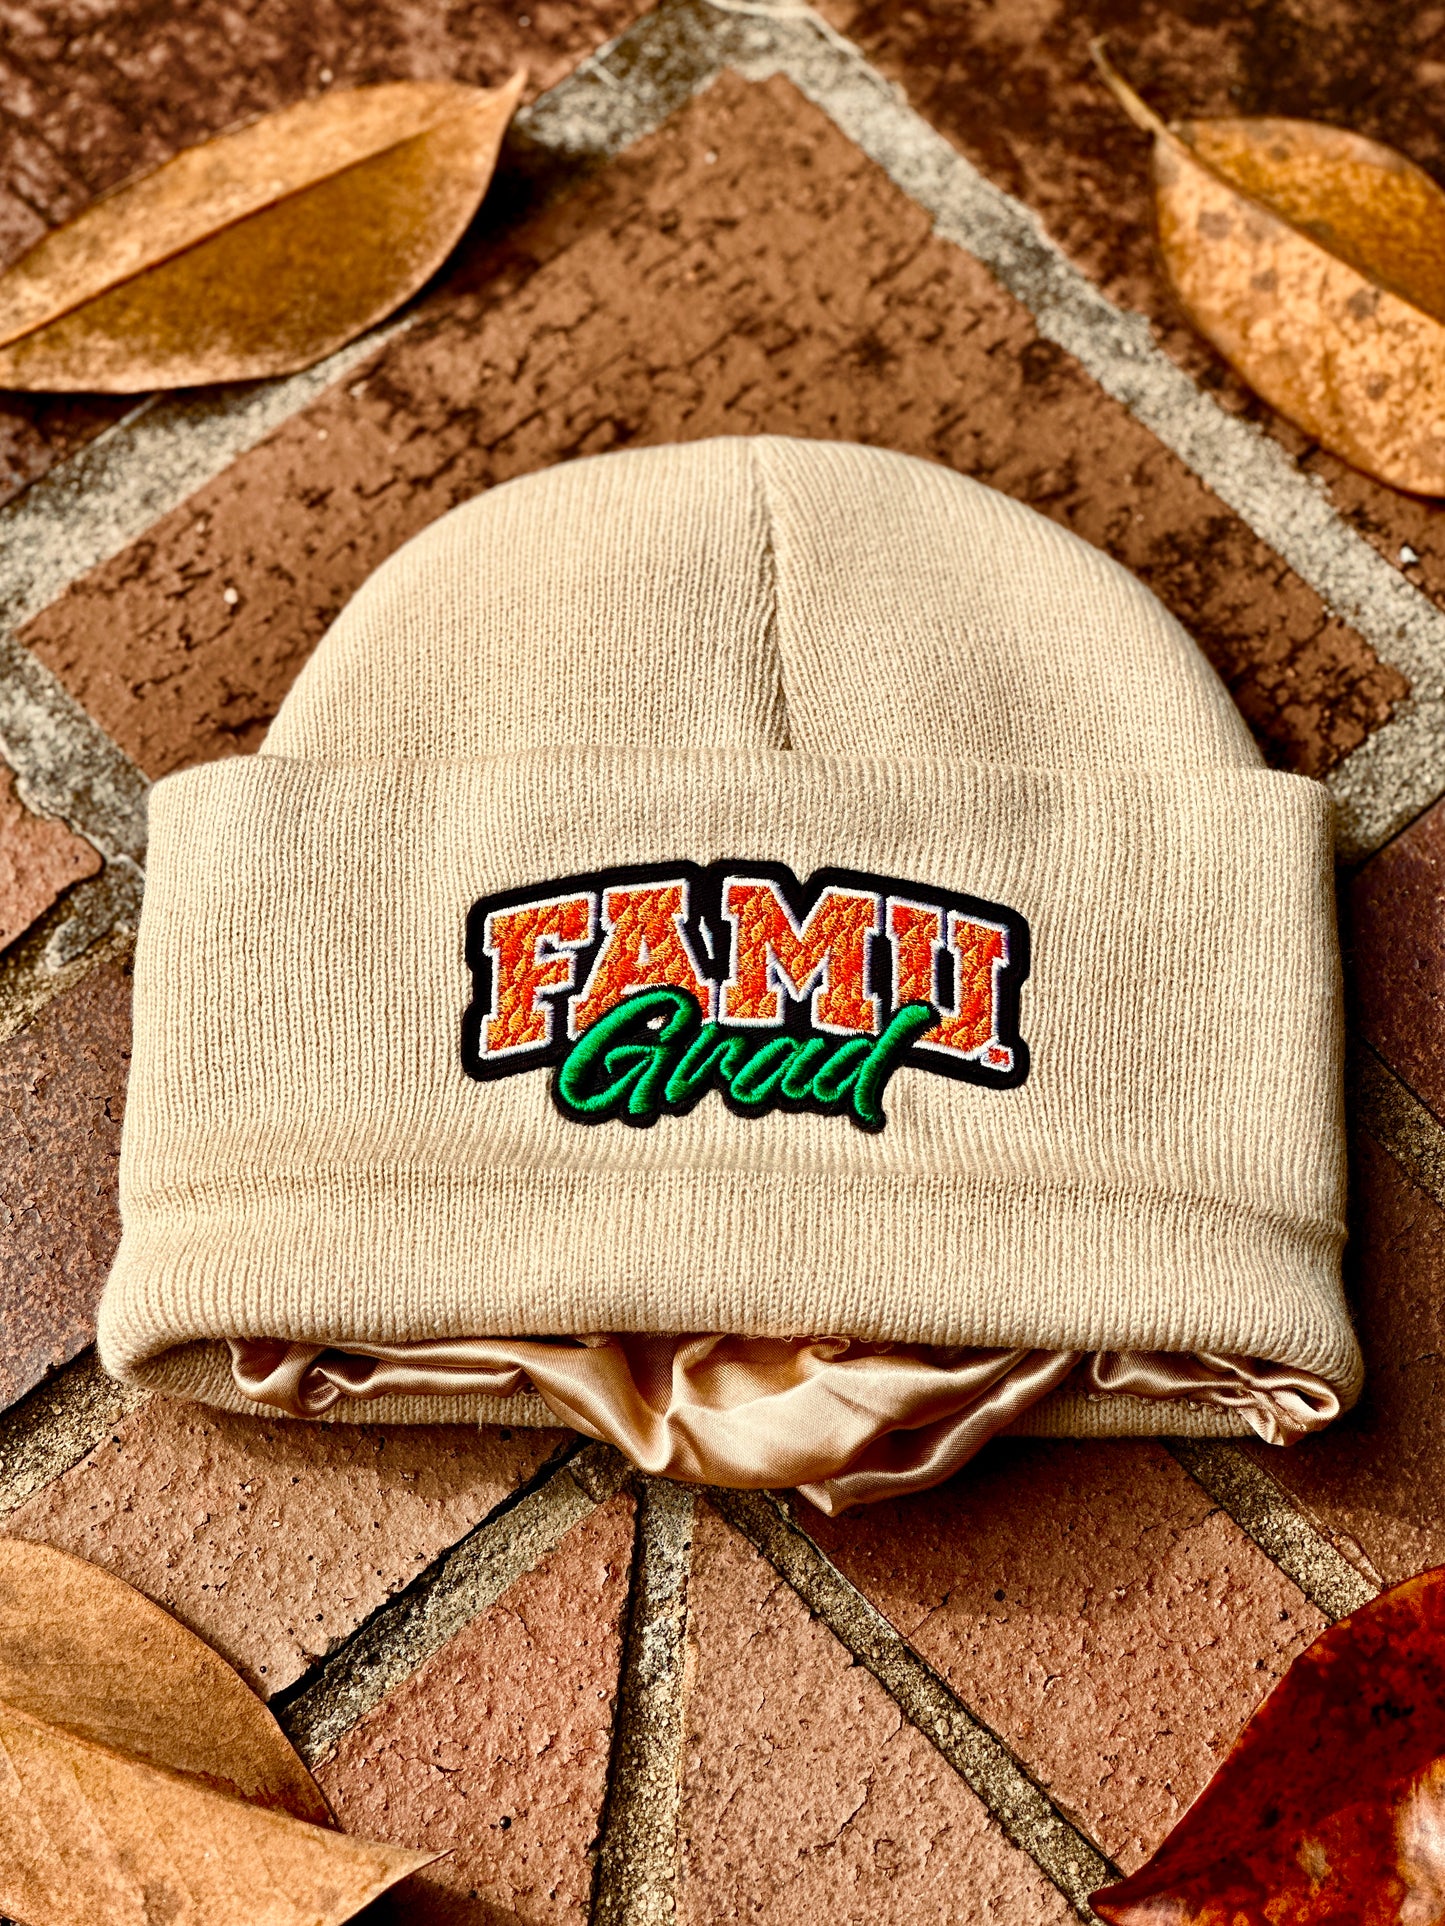 FAMU “Grad” Silk Infused Winter CRWN